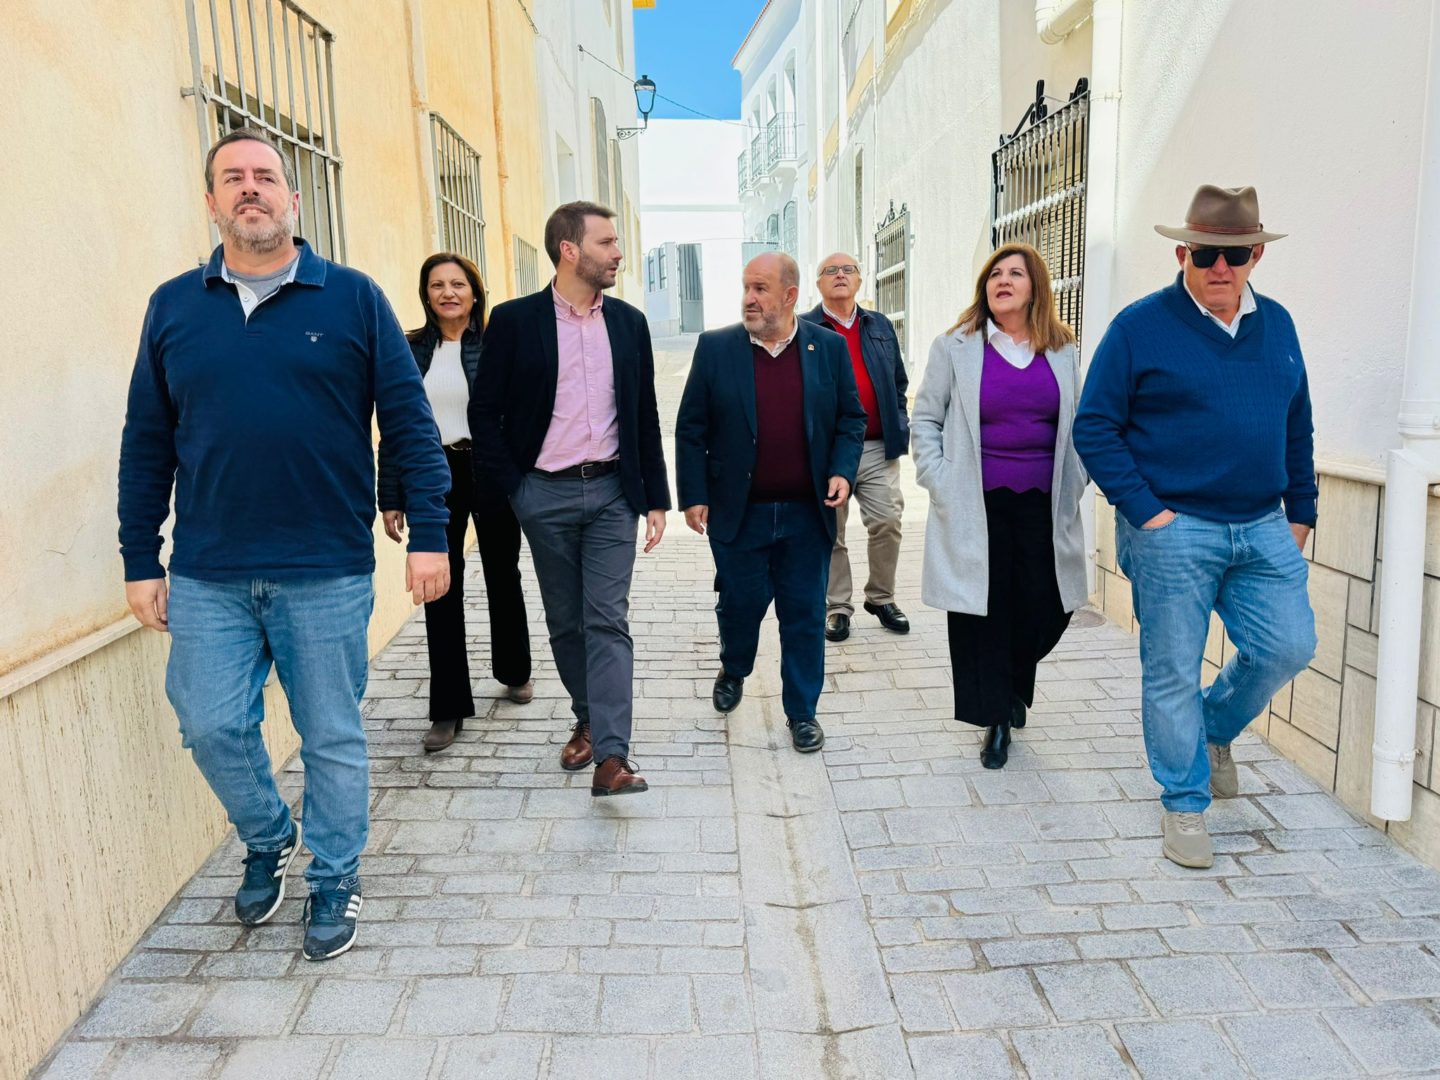 El alcalde de Dalías recibe al delegado de Inclusión Social para visitar las obras de accesibilidad ejecutadas en el municipio